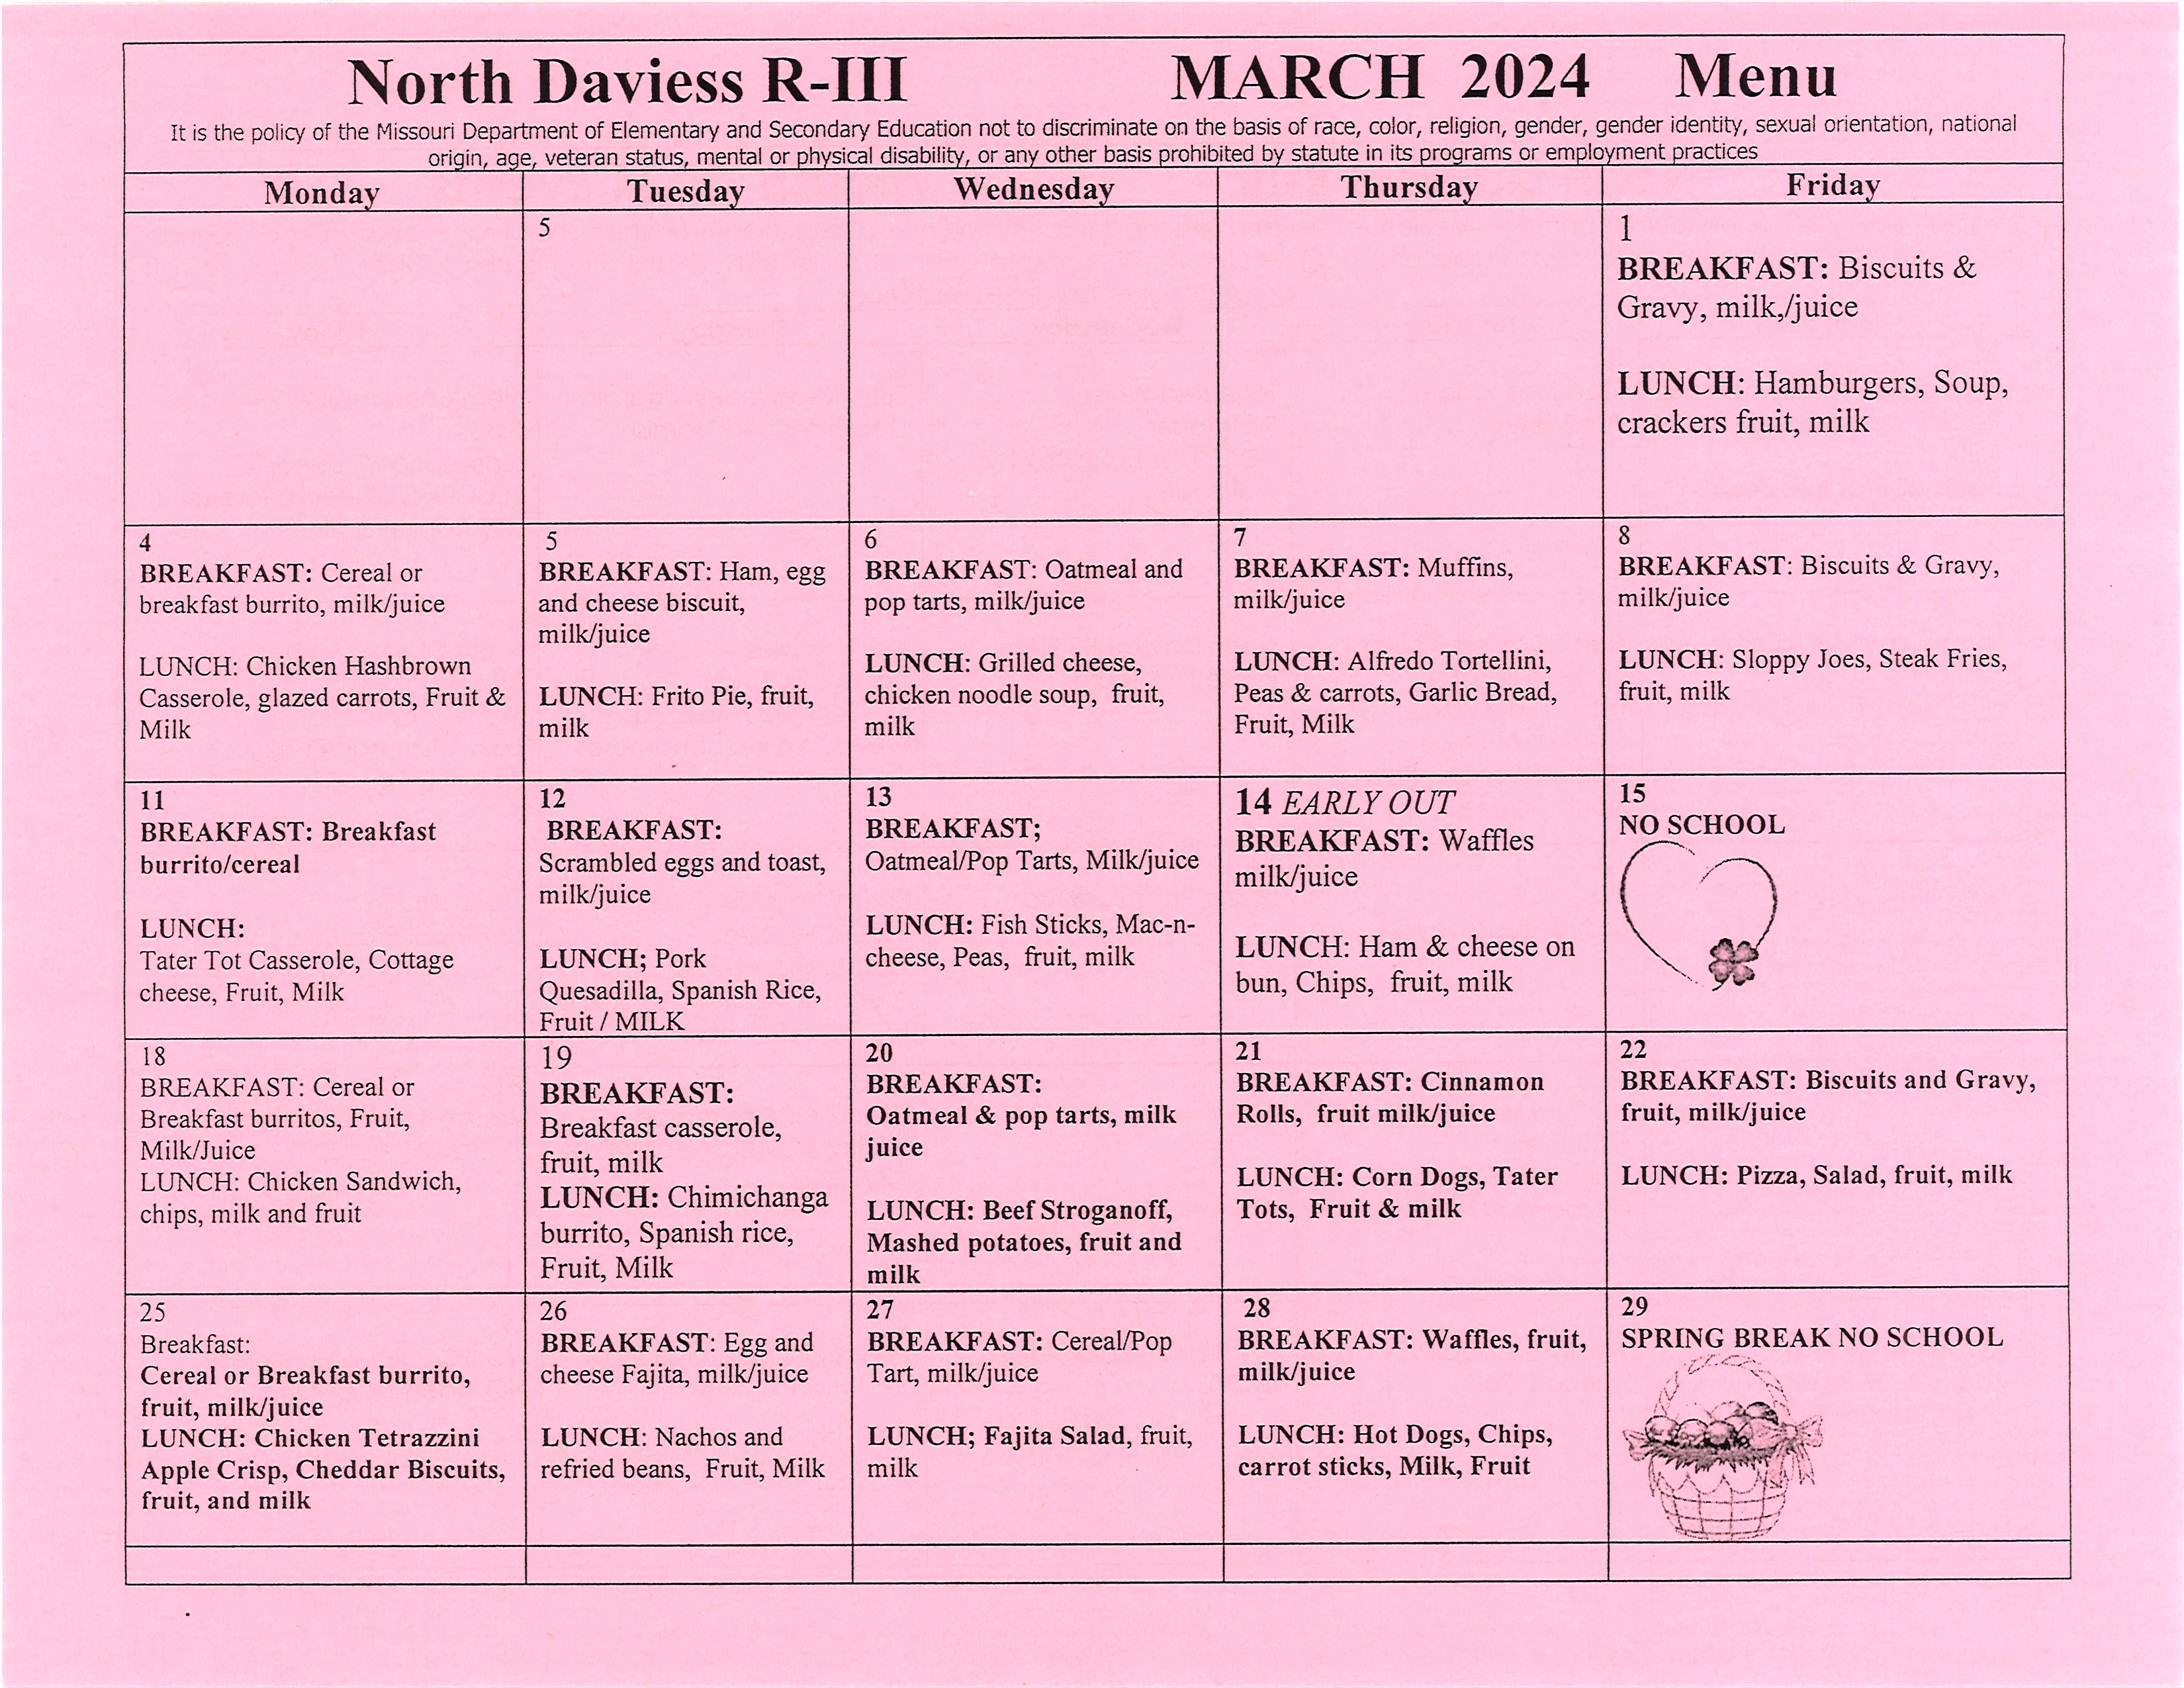 Feb menu